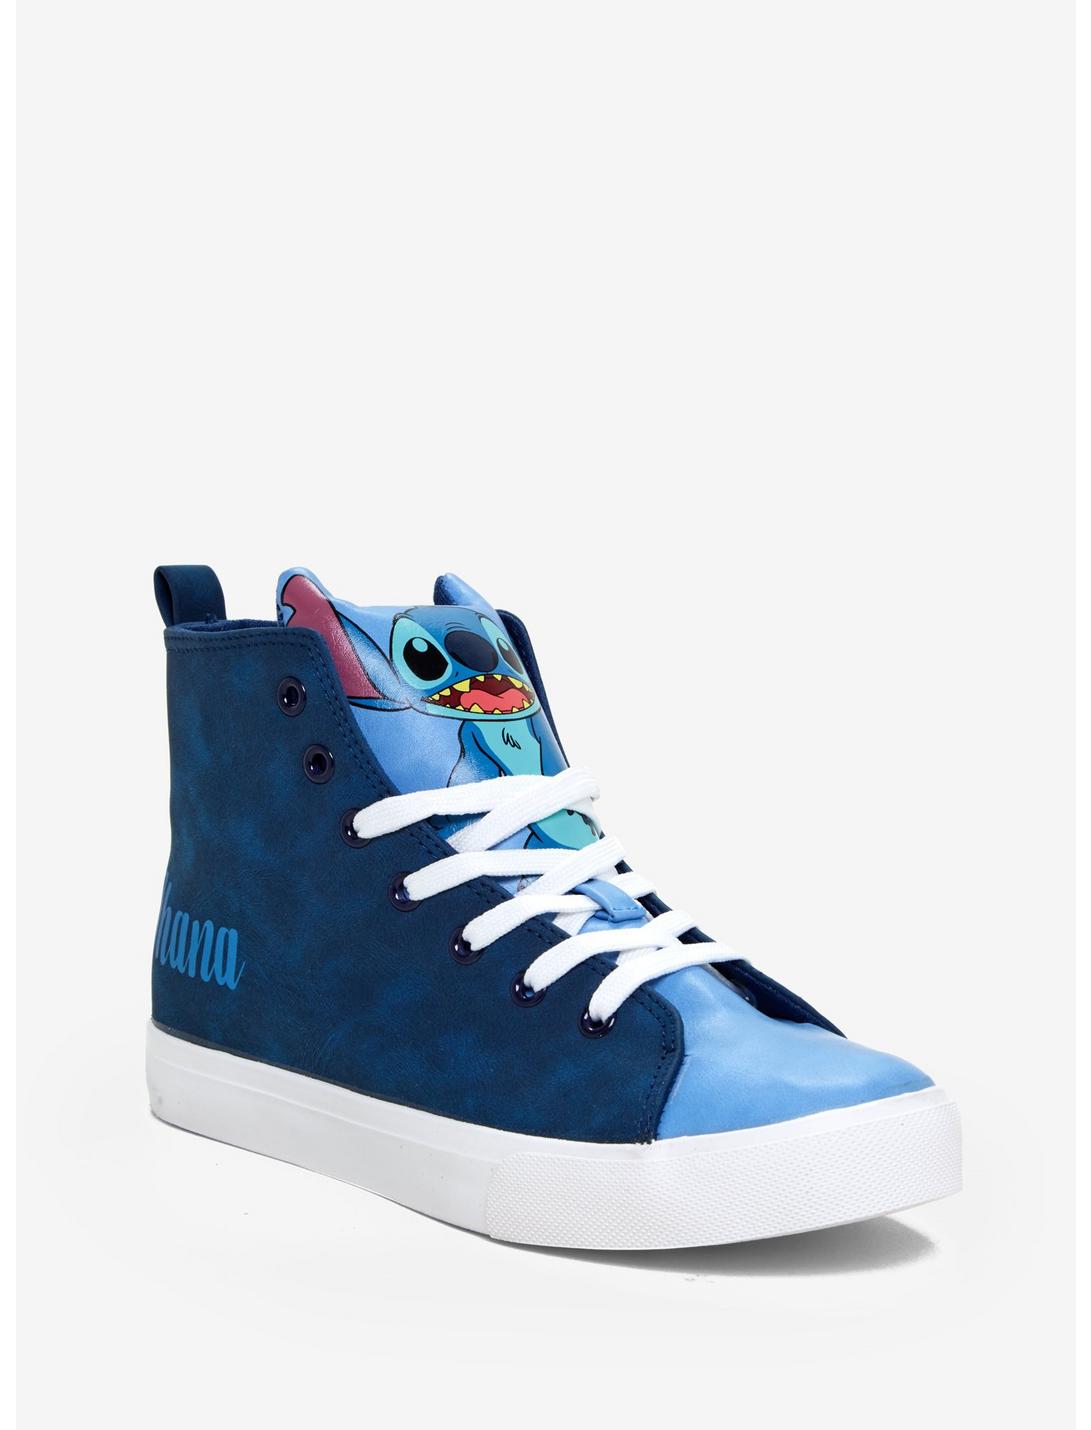 Disney Lilo & Stitch Ohana Hi-Top Sneakers, BLUE, hi-res